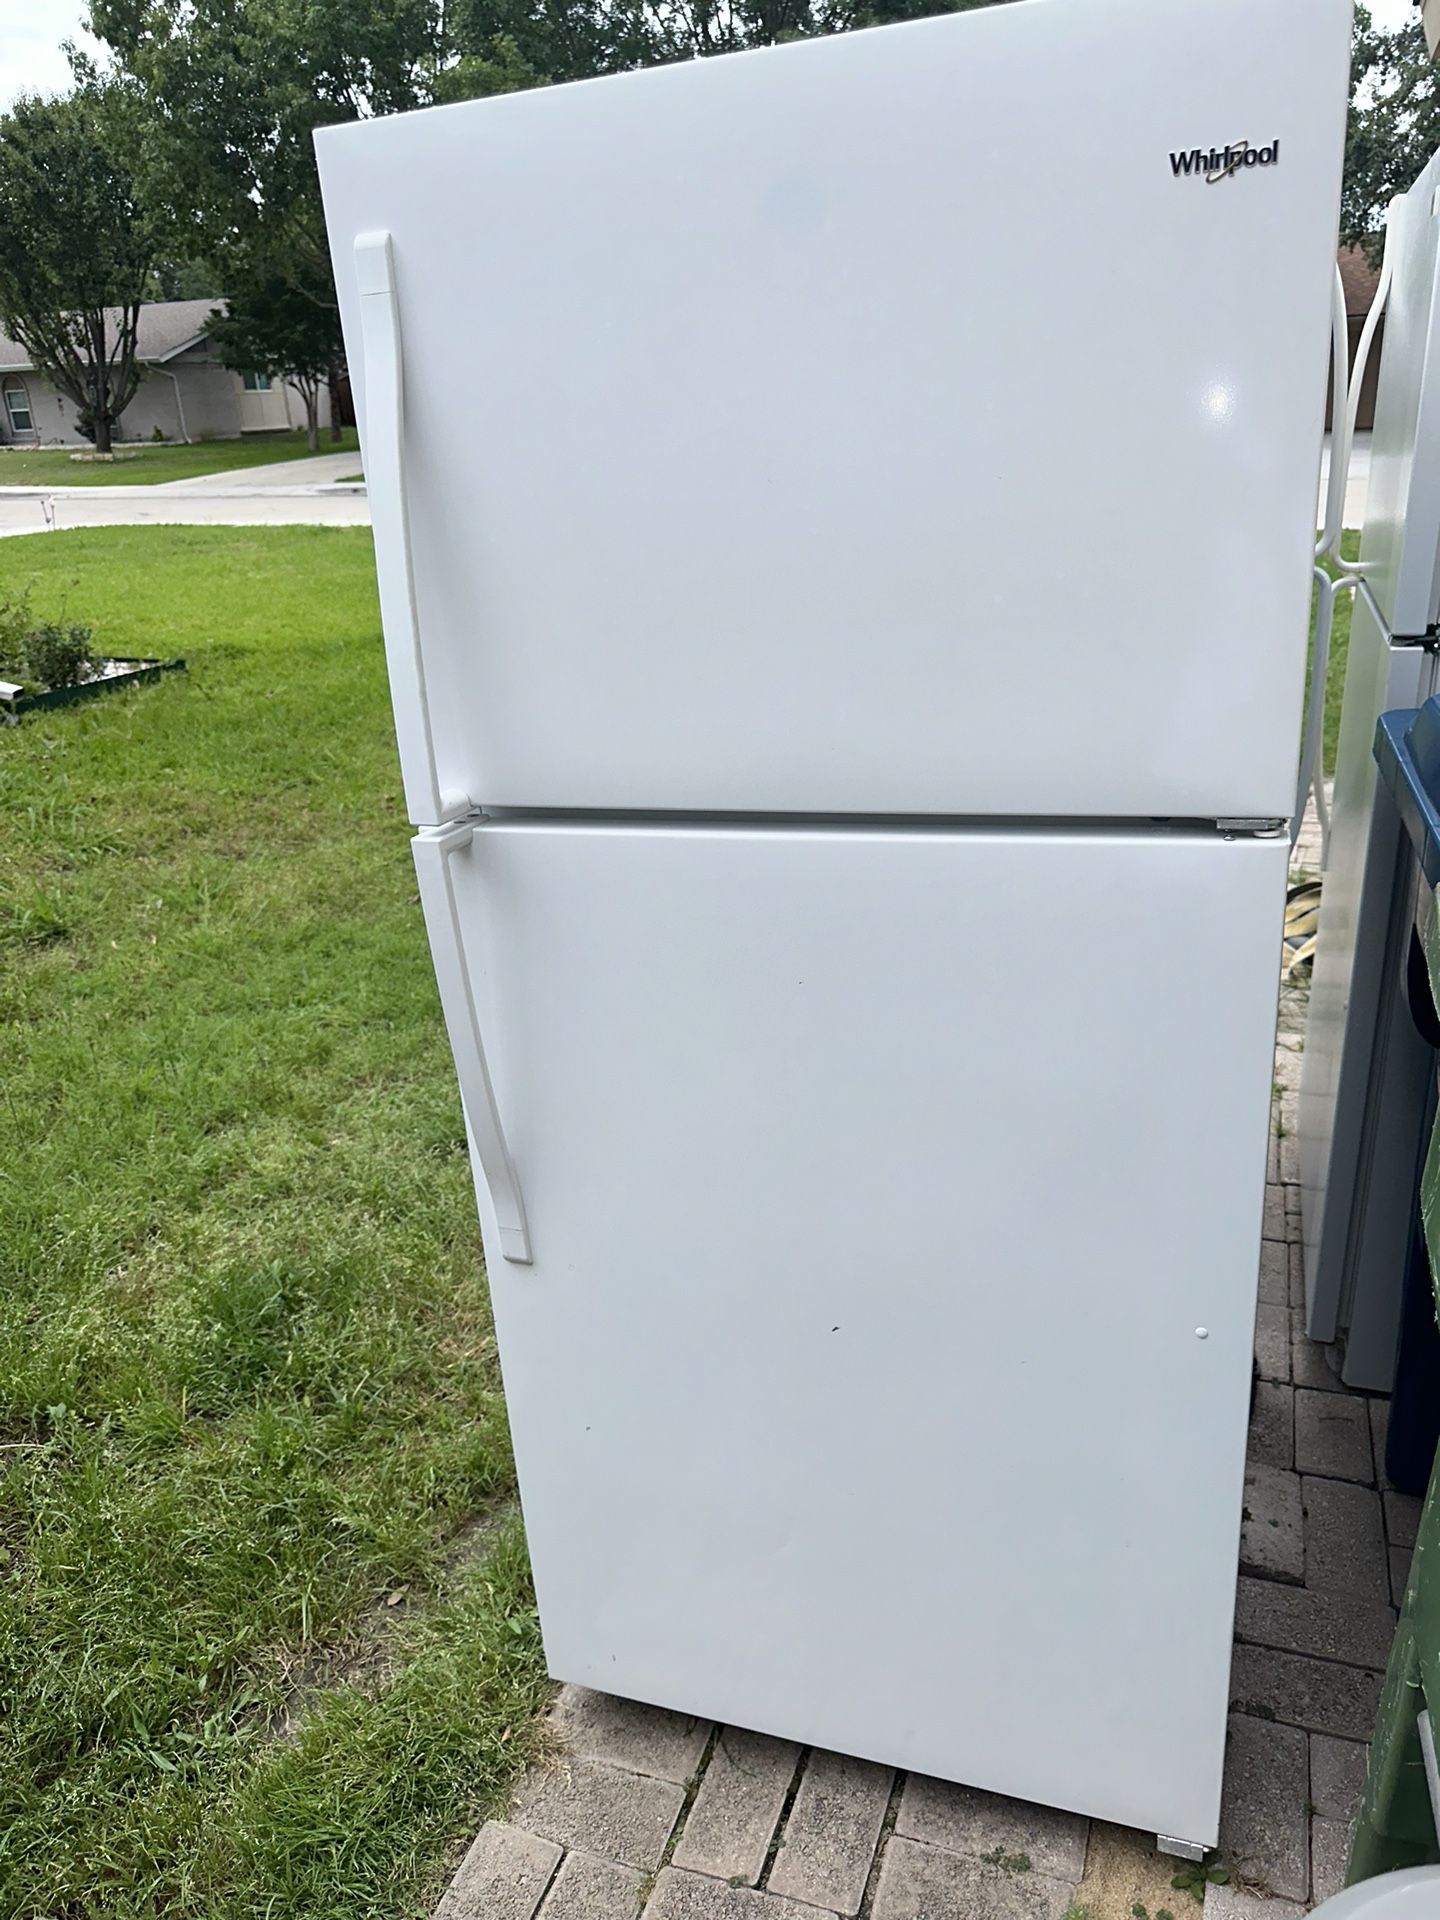 Refrigerador Whirlpool Semi Nuevo Enfría Al 💯 